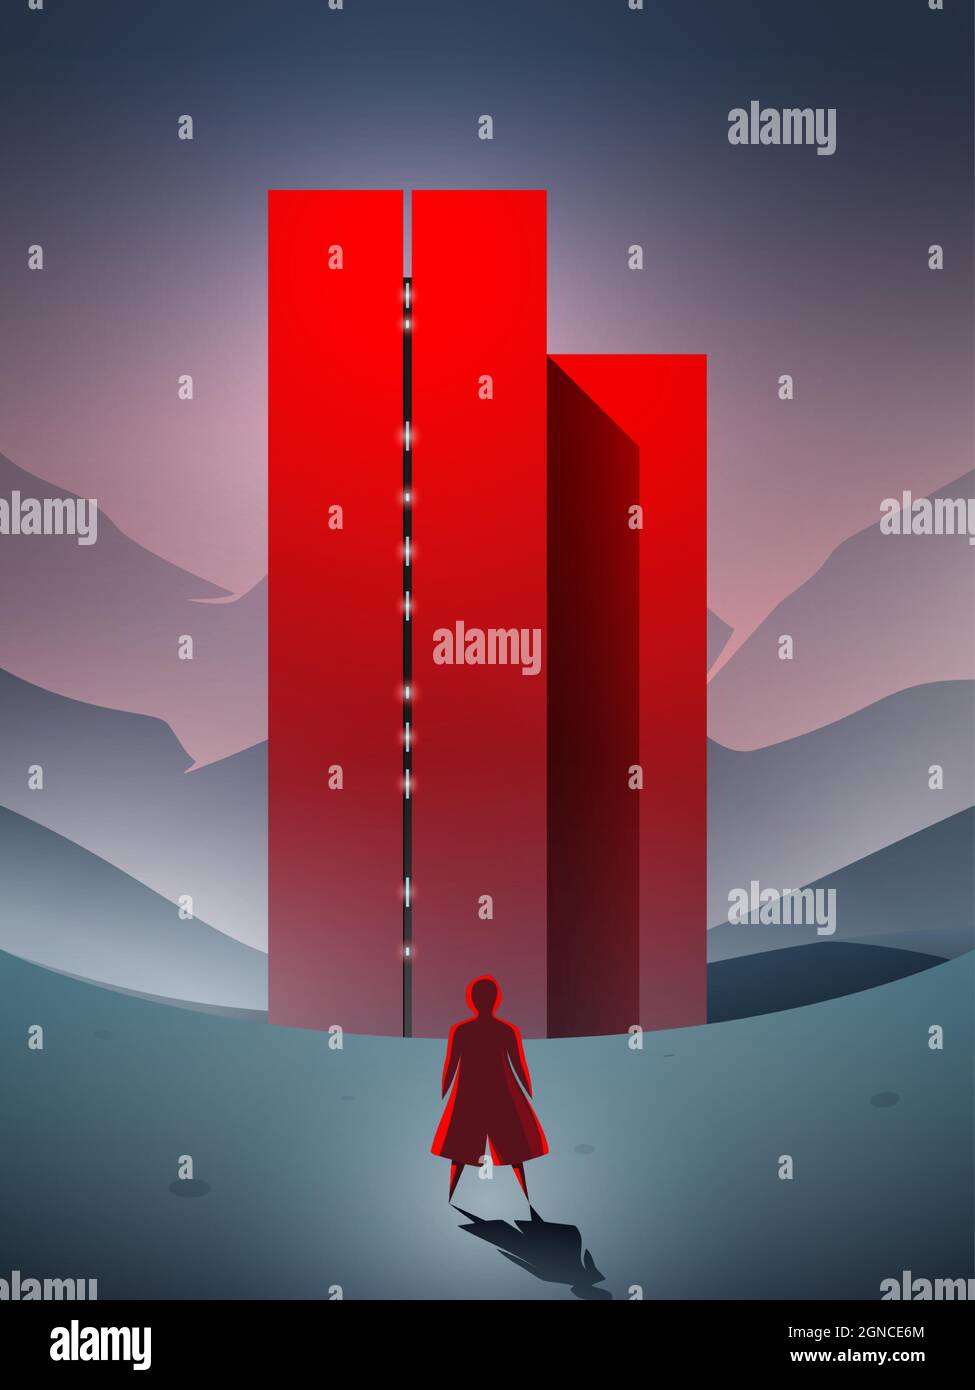 Scène de vecteur de science-fiction, fille arrivant à l'édifice rouge futuriste debout dans un paysage surréaliste. Illustration de Vecteur